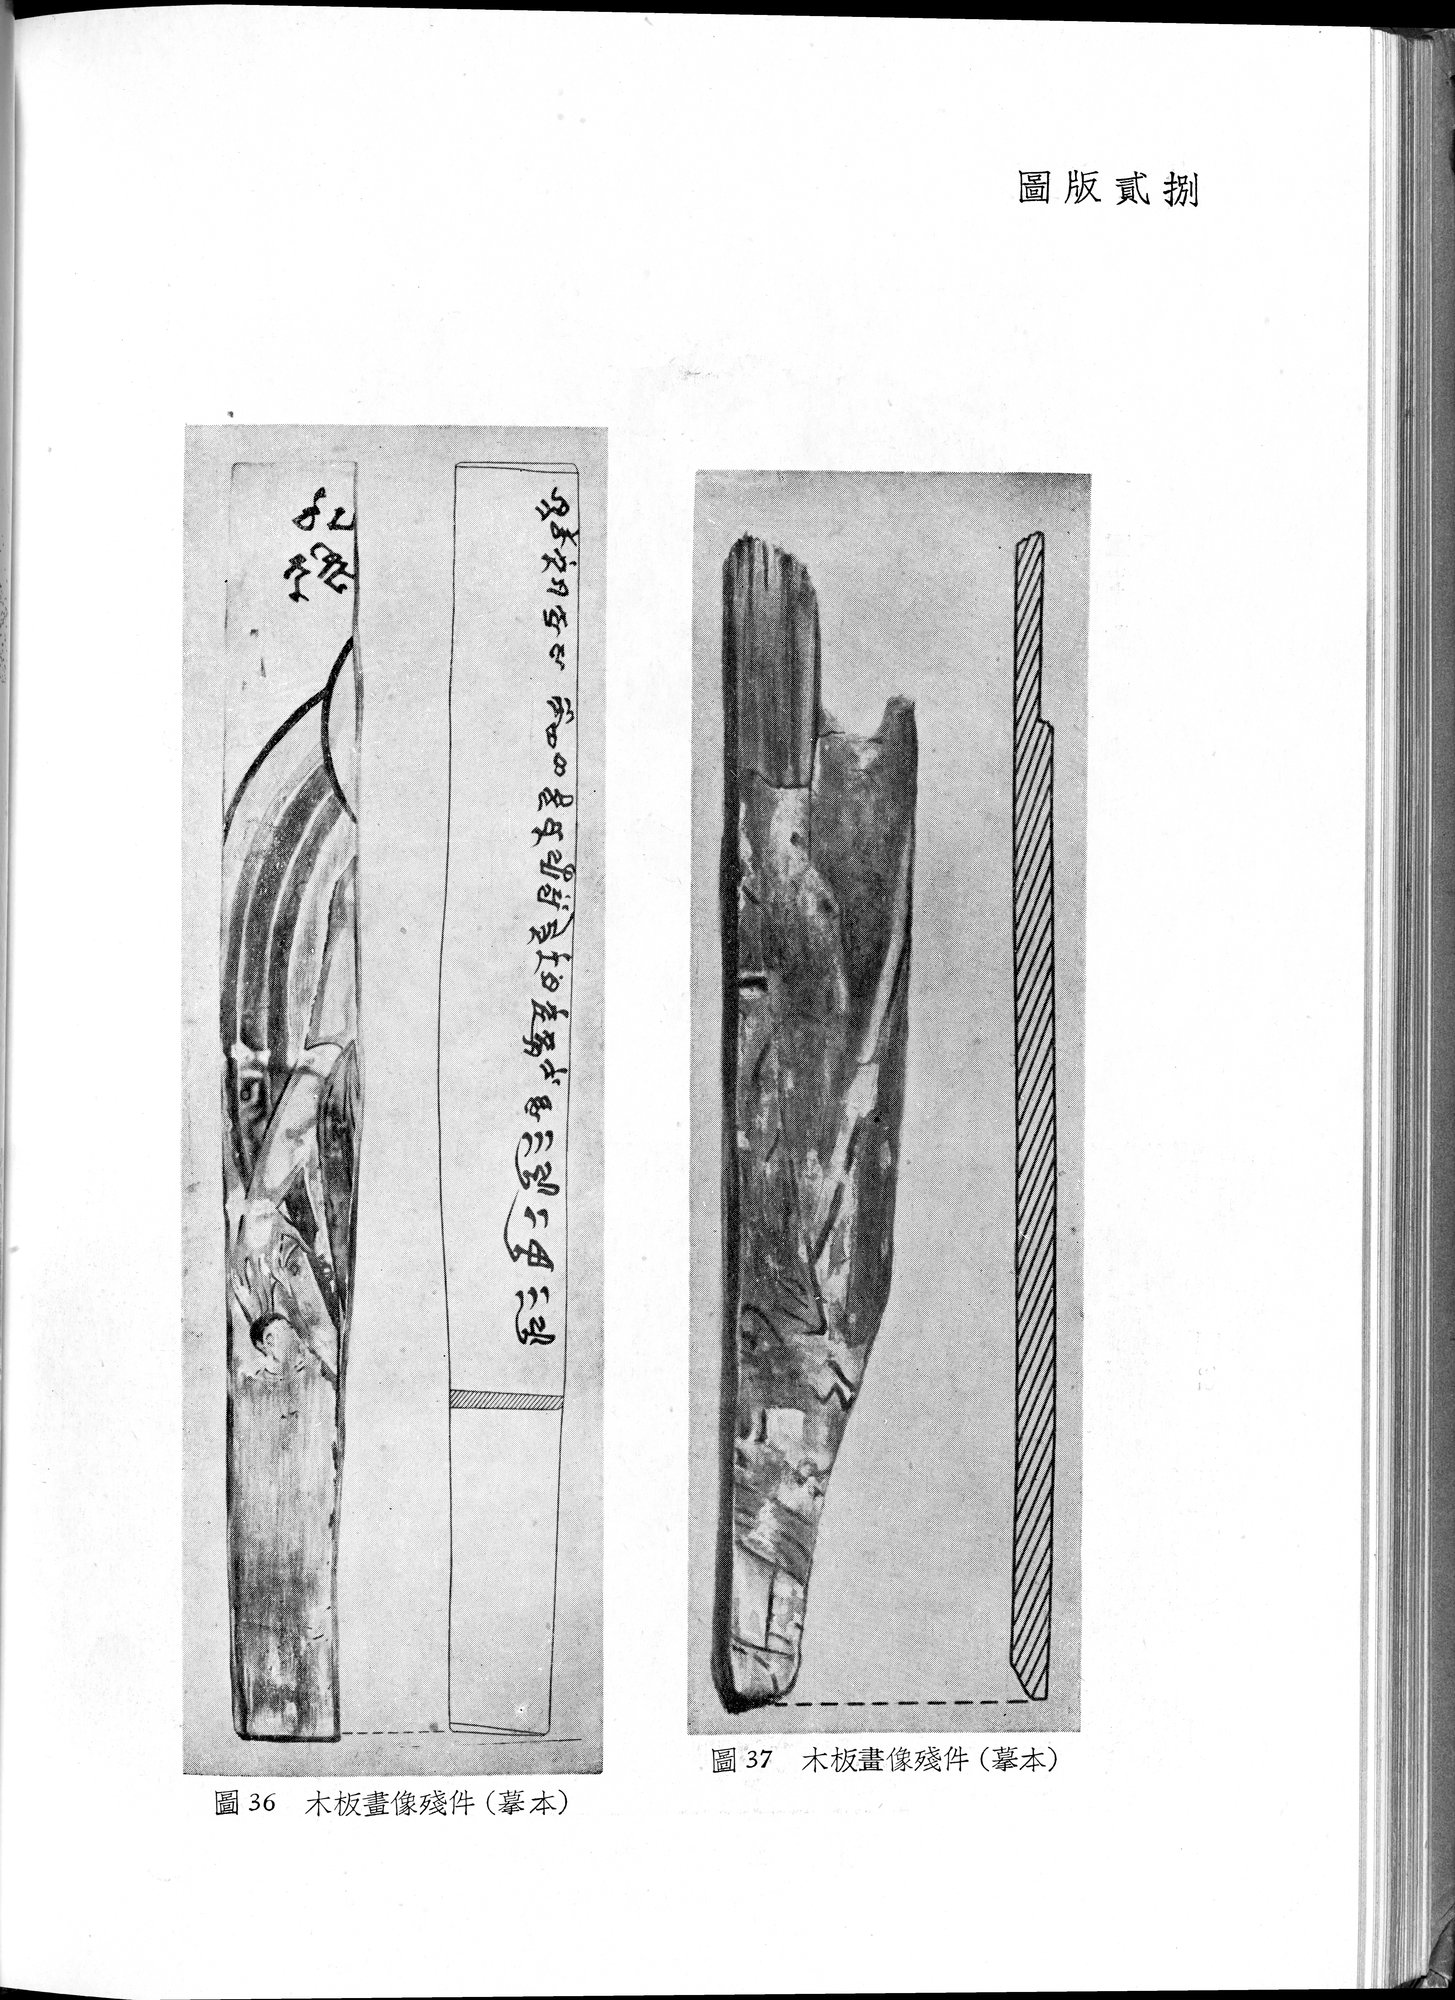 塔里木盆地考古記 : vol.1 / Page 248 (Grayscale High Resolution Image)